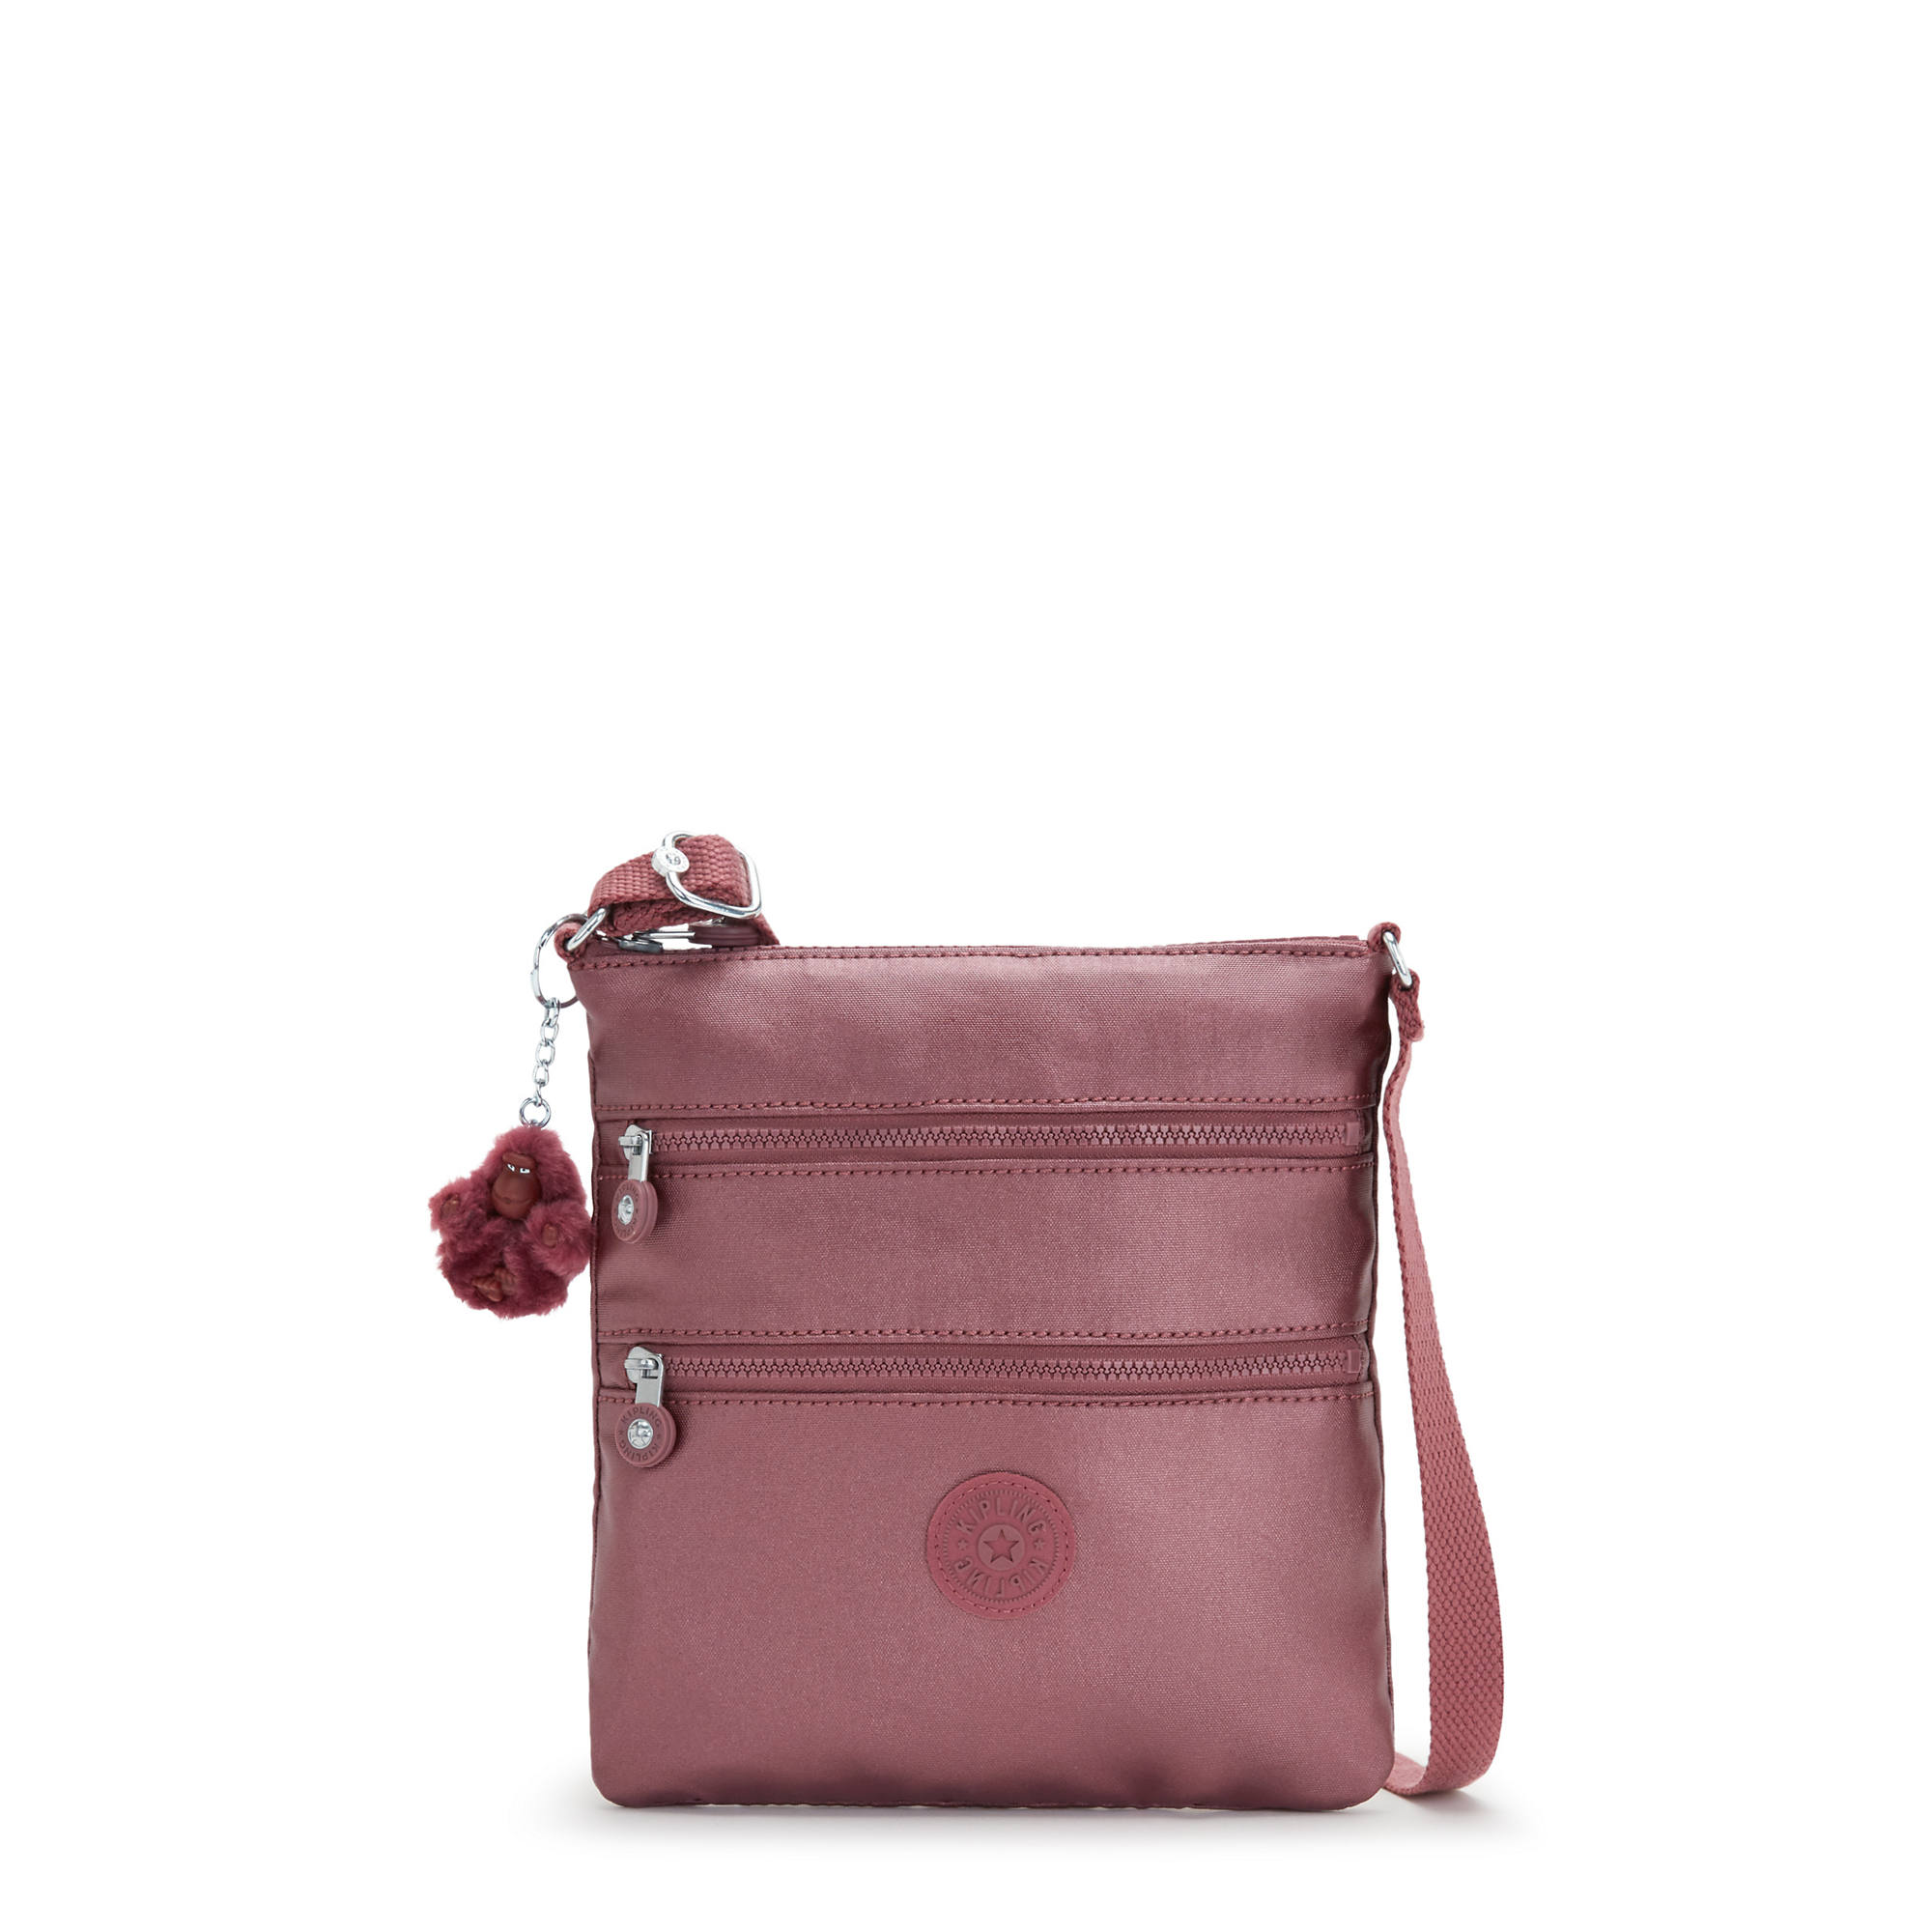 Kipling Flash Sale: Handbags and more Starting at $24.99